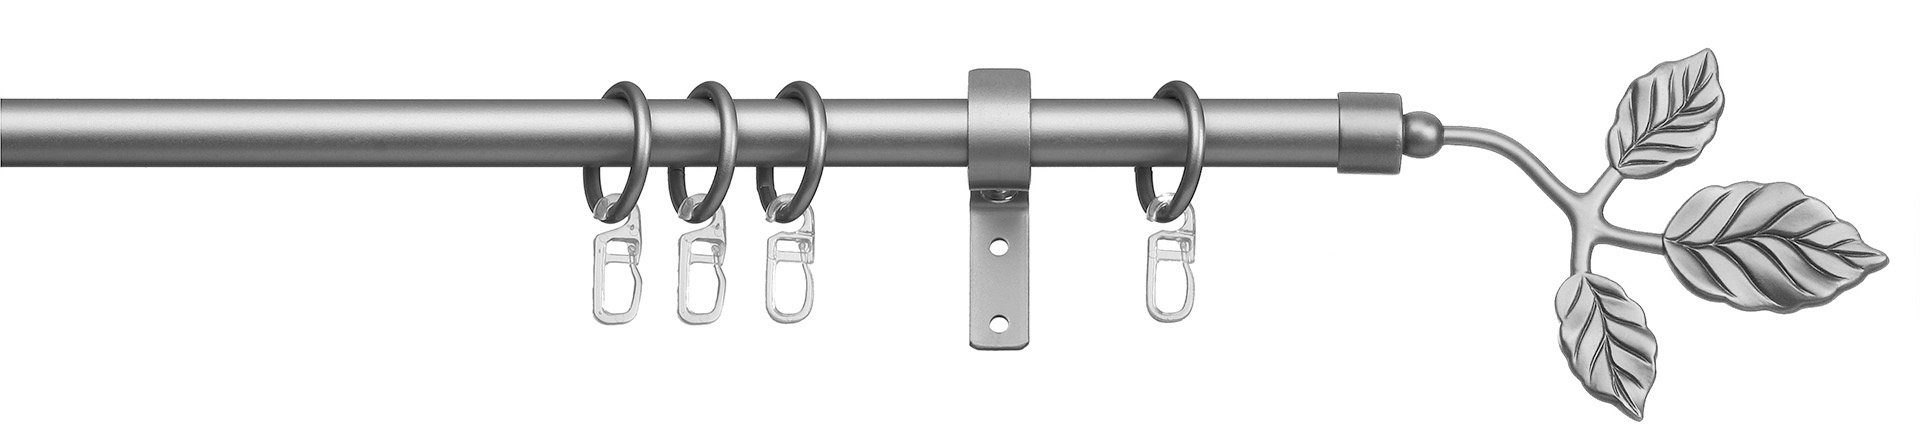 Gardinenstange Toskana, indeko, Ø 16 mm, 1-läufig, Fixmaß, verschraubt, Stahl, Komplett-Set inkl. Ringen und Montagematerial